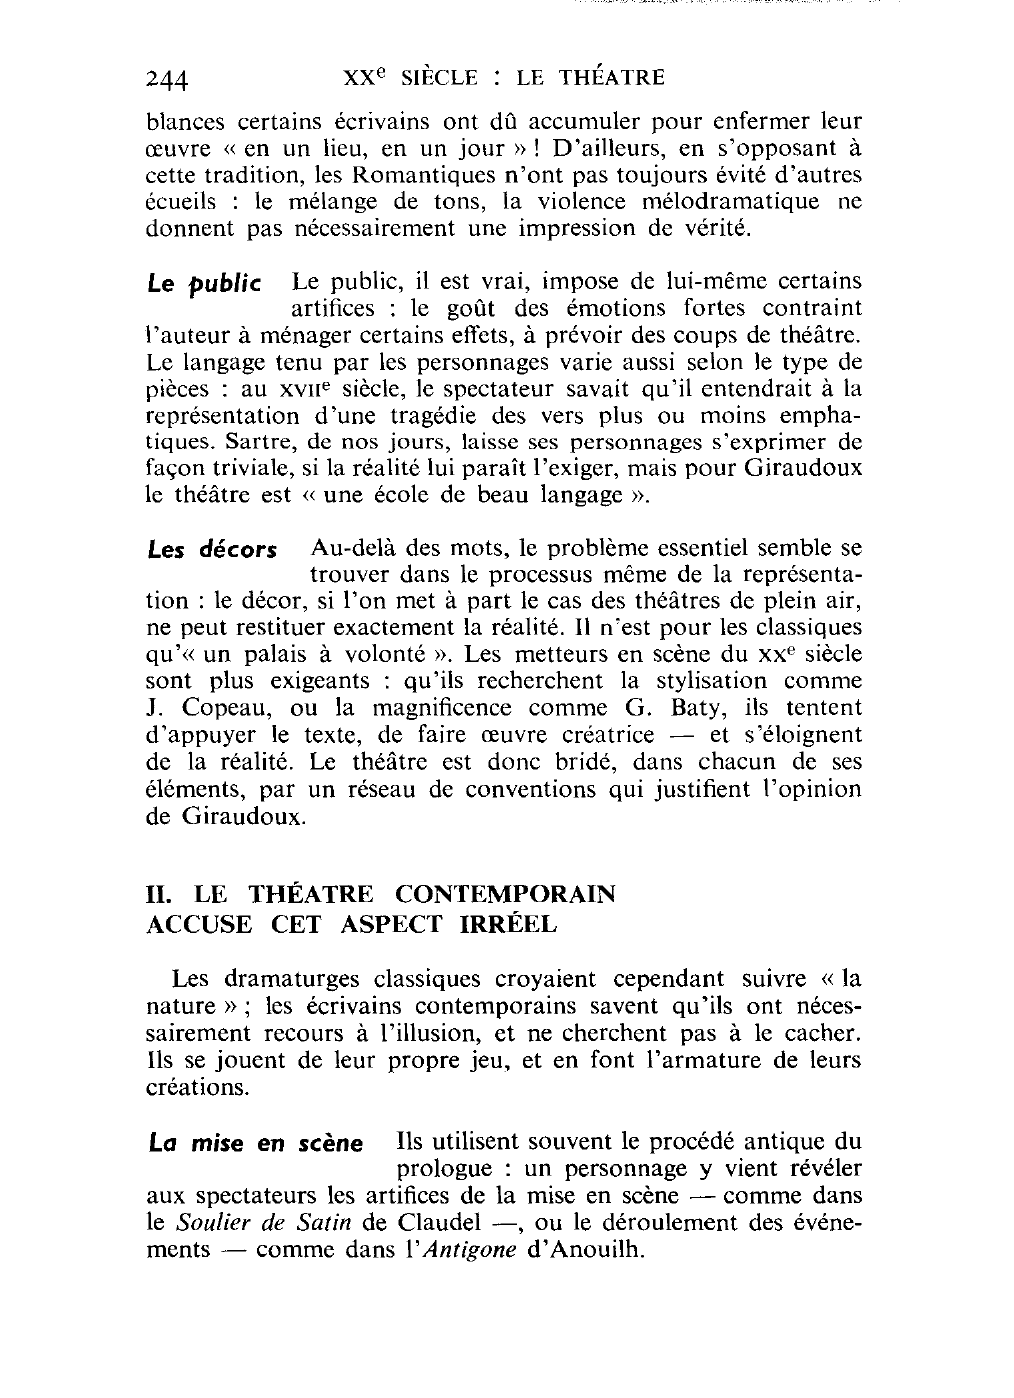 Prévisualisation du document « Le théâtre, c'est d'être réel dans l'irréel », écrit Jean Giraudoux dans «l'Impromptu de Paris ». Comment expliquez-vous ce jugement ? Le théâtre contemporain le justifie-t-il ?